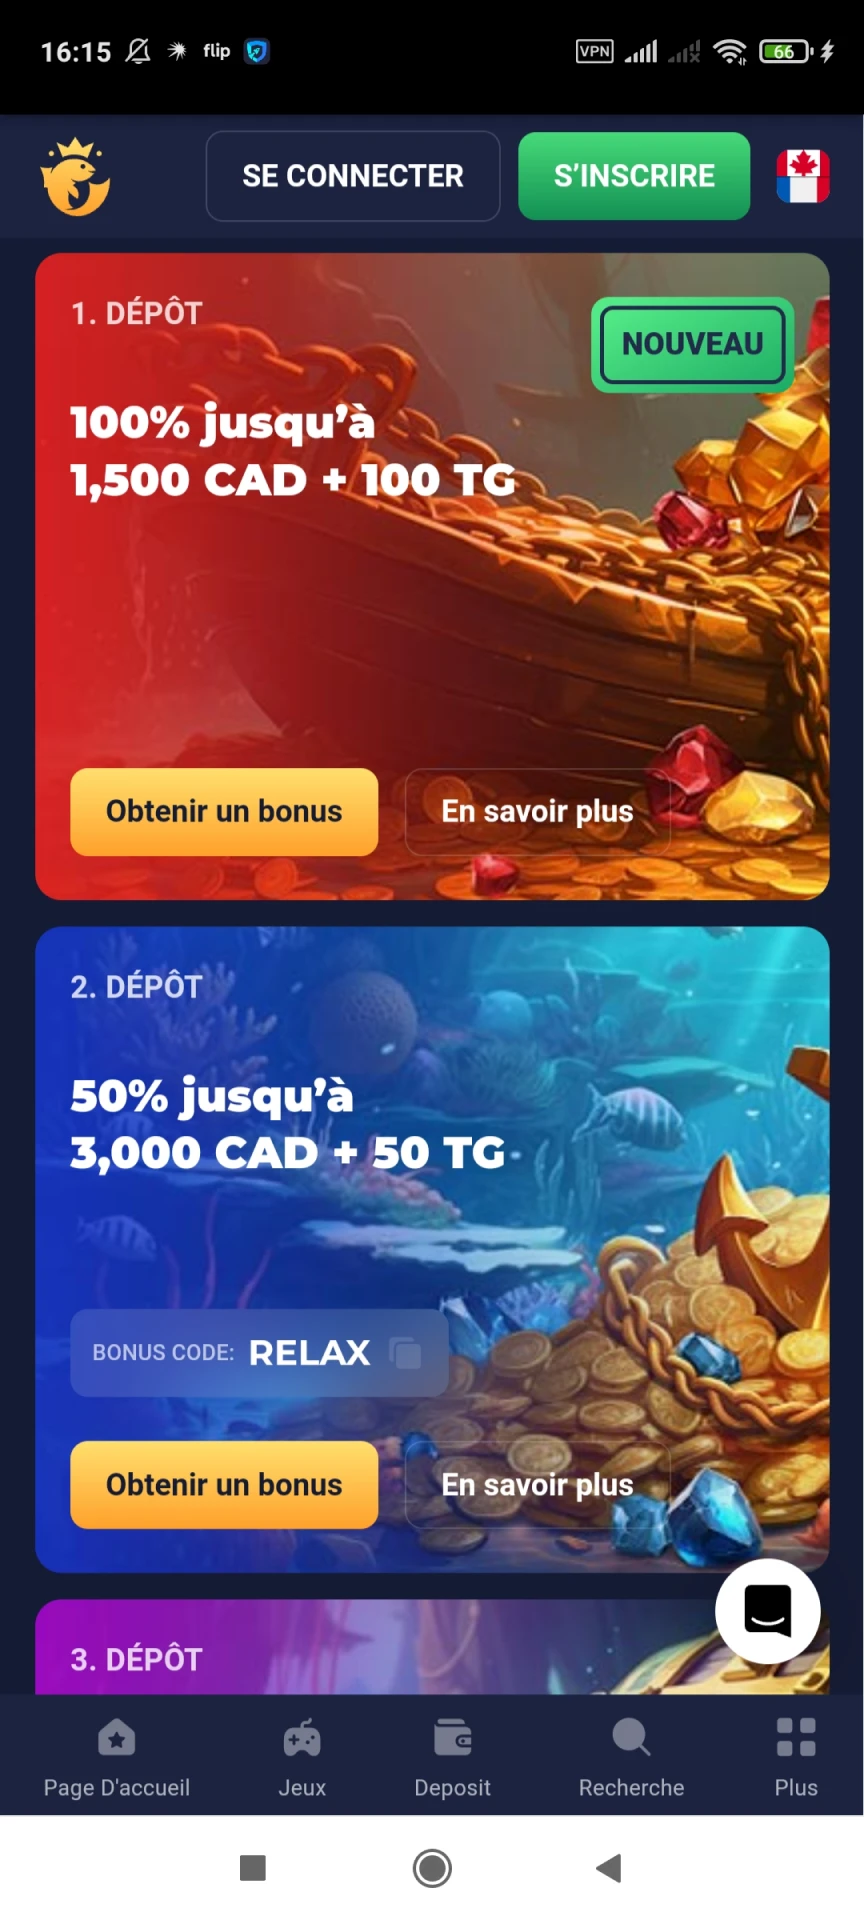 Visitez la page des bonus de l'application Joo Casino.